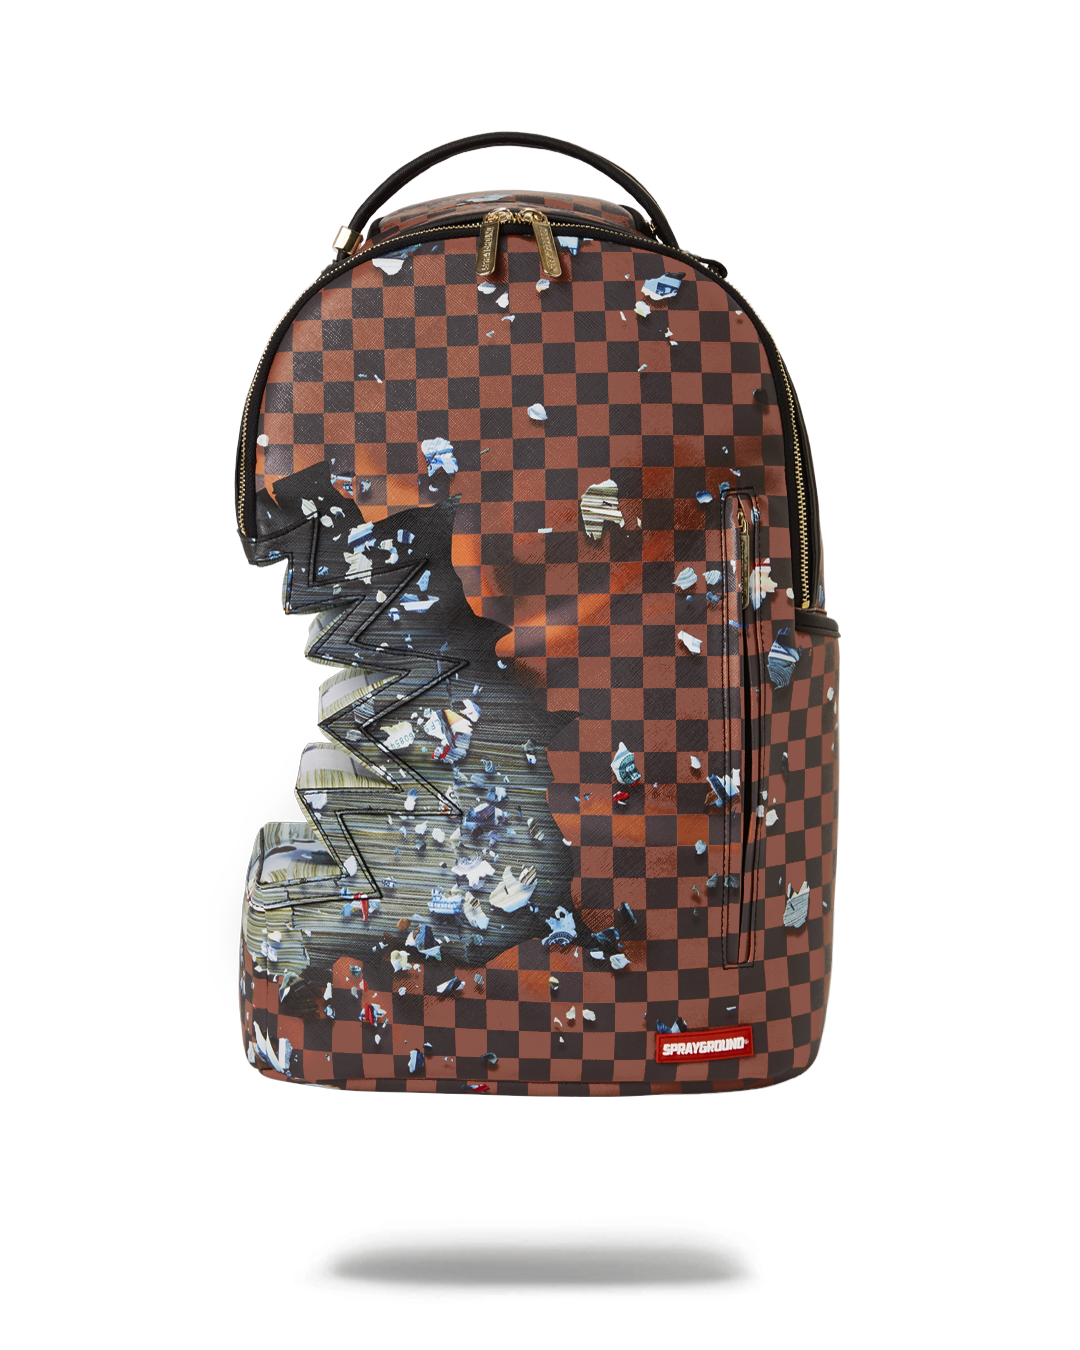 louis vuitton sprayground backpack brown